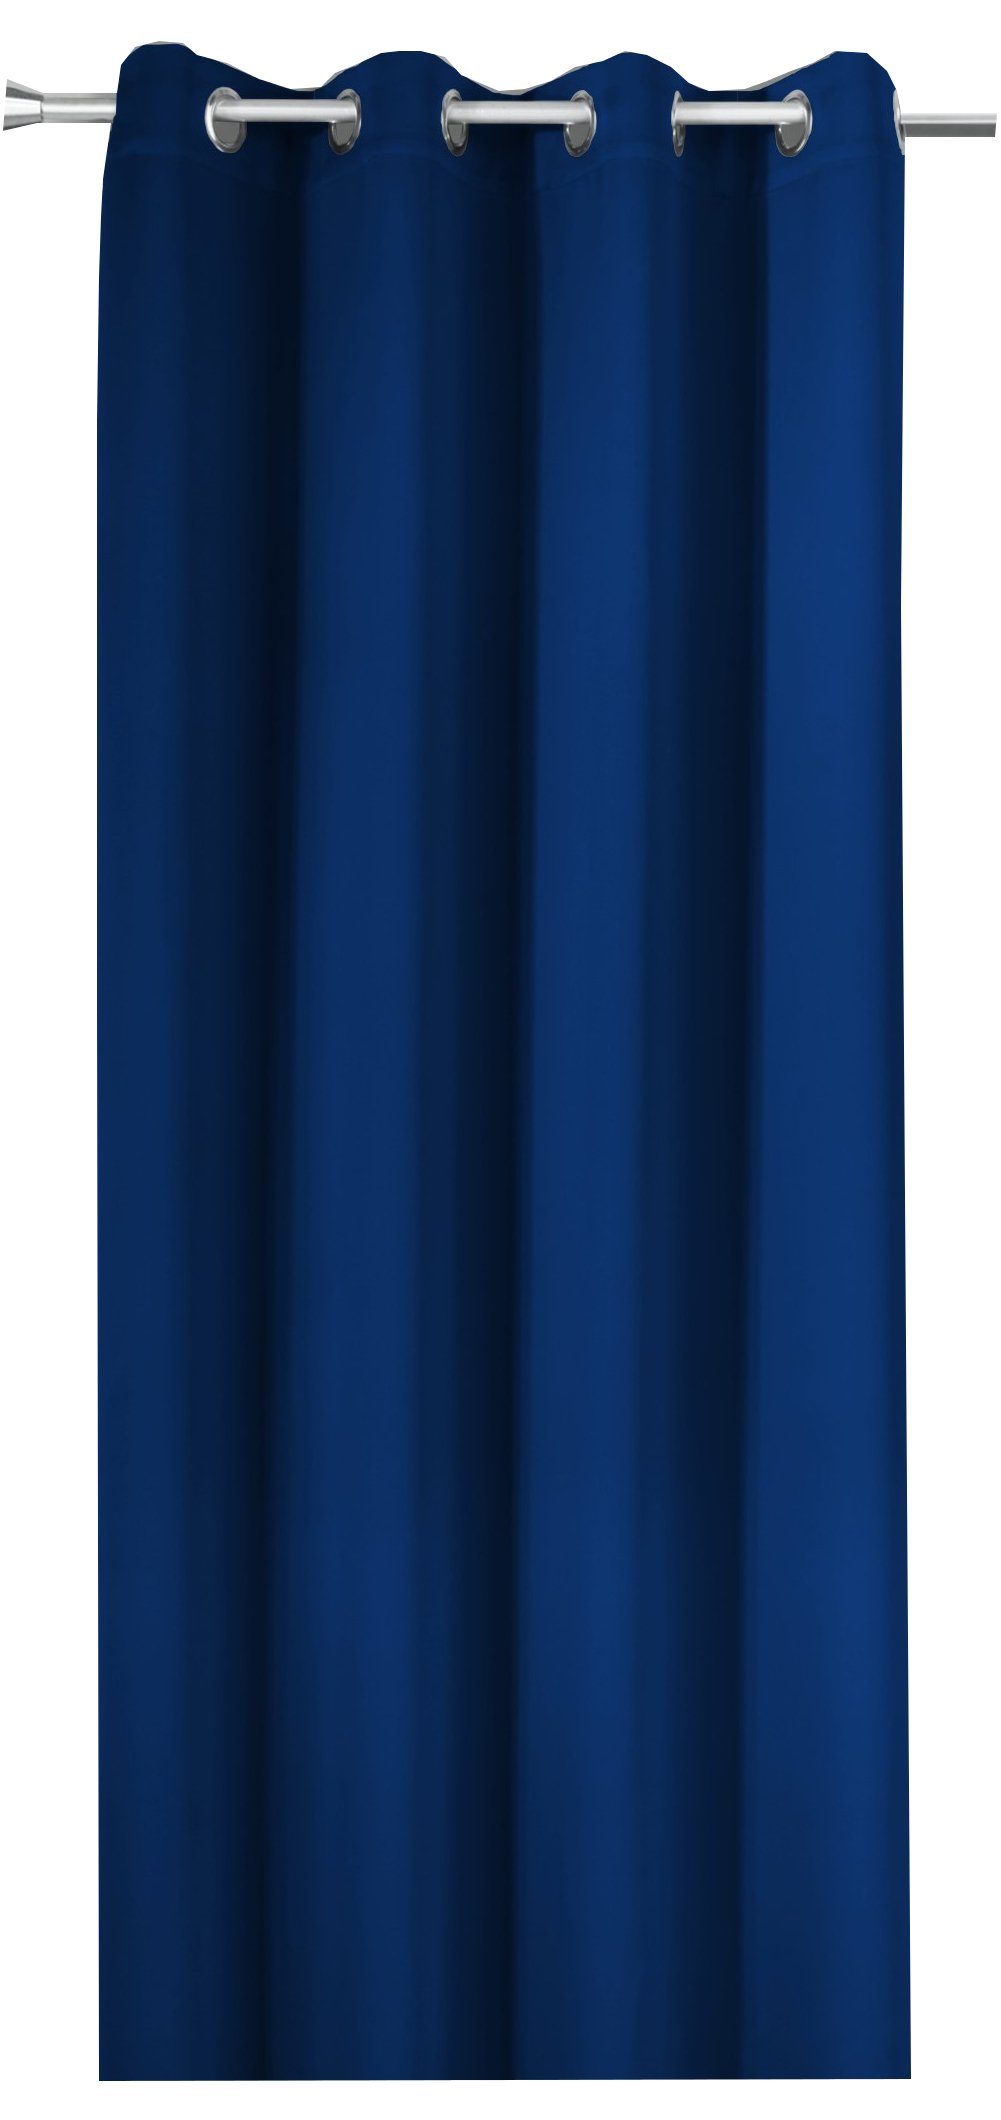 Vorhang nach Maß Verdunkelungsvorhang XXL marine-blau mit ÖSEN bis 350 cm  lang, novumfix, verdunkelnd, Thermoeffekt, Energiesparen, Verdunkelung